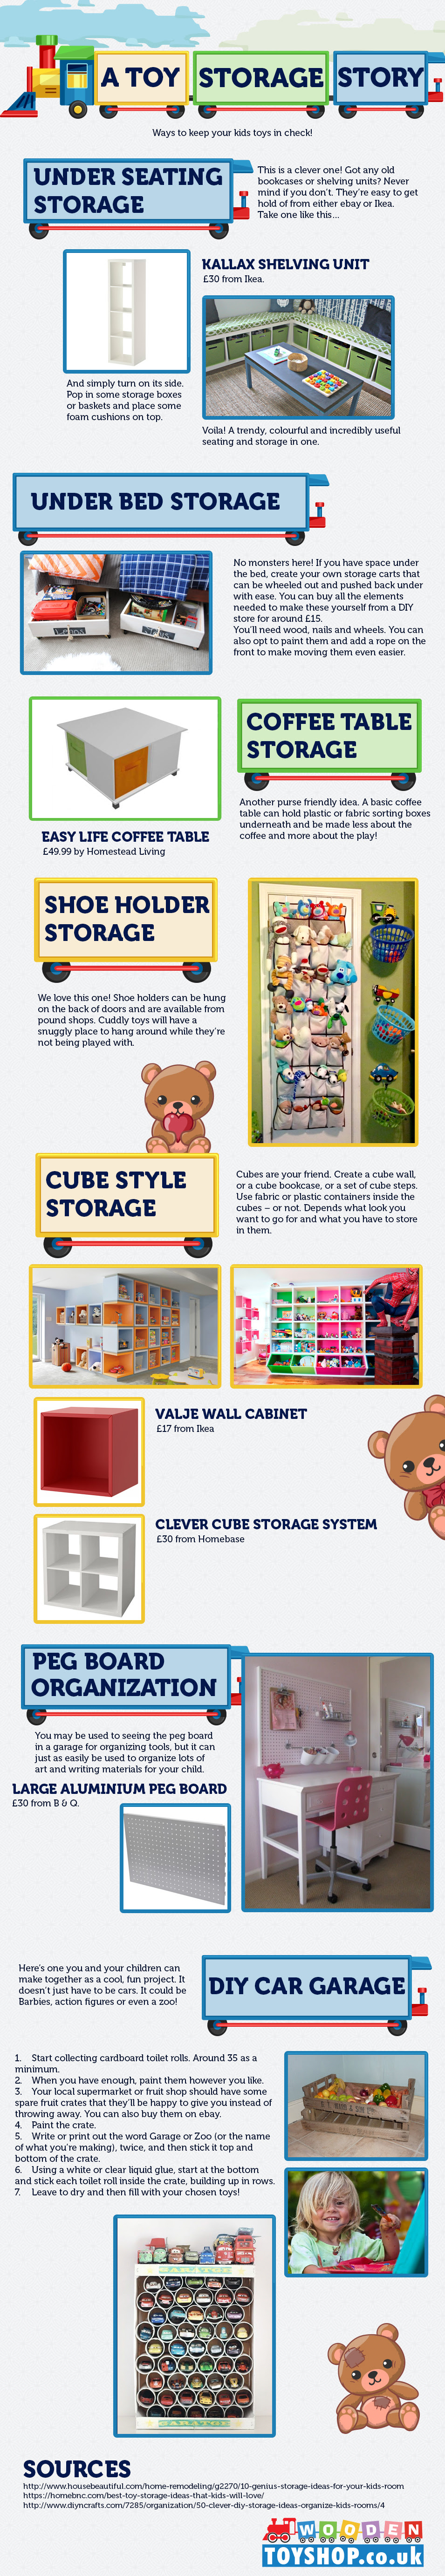 Storage Ideas for Toys